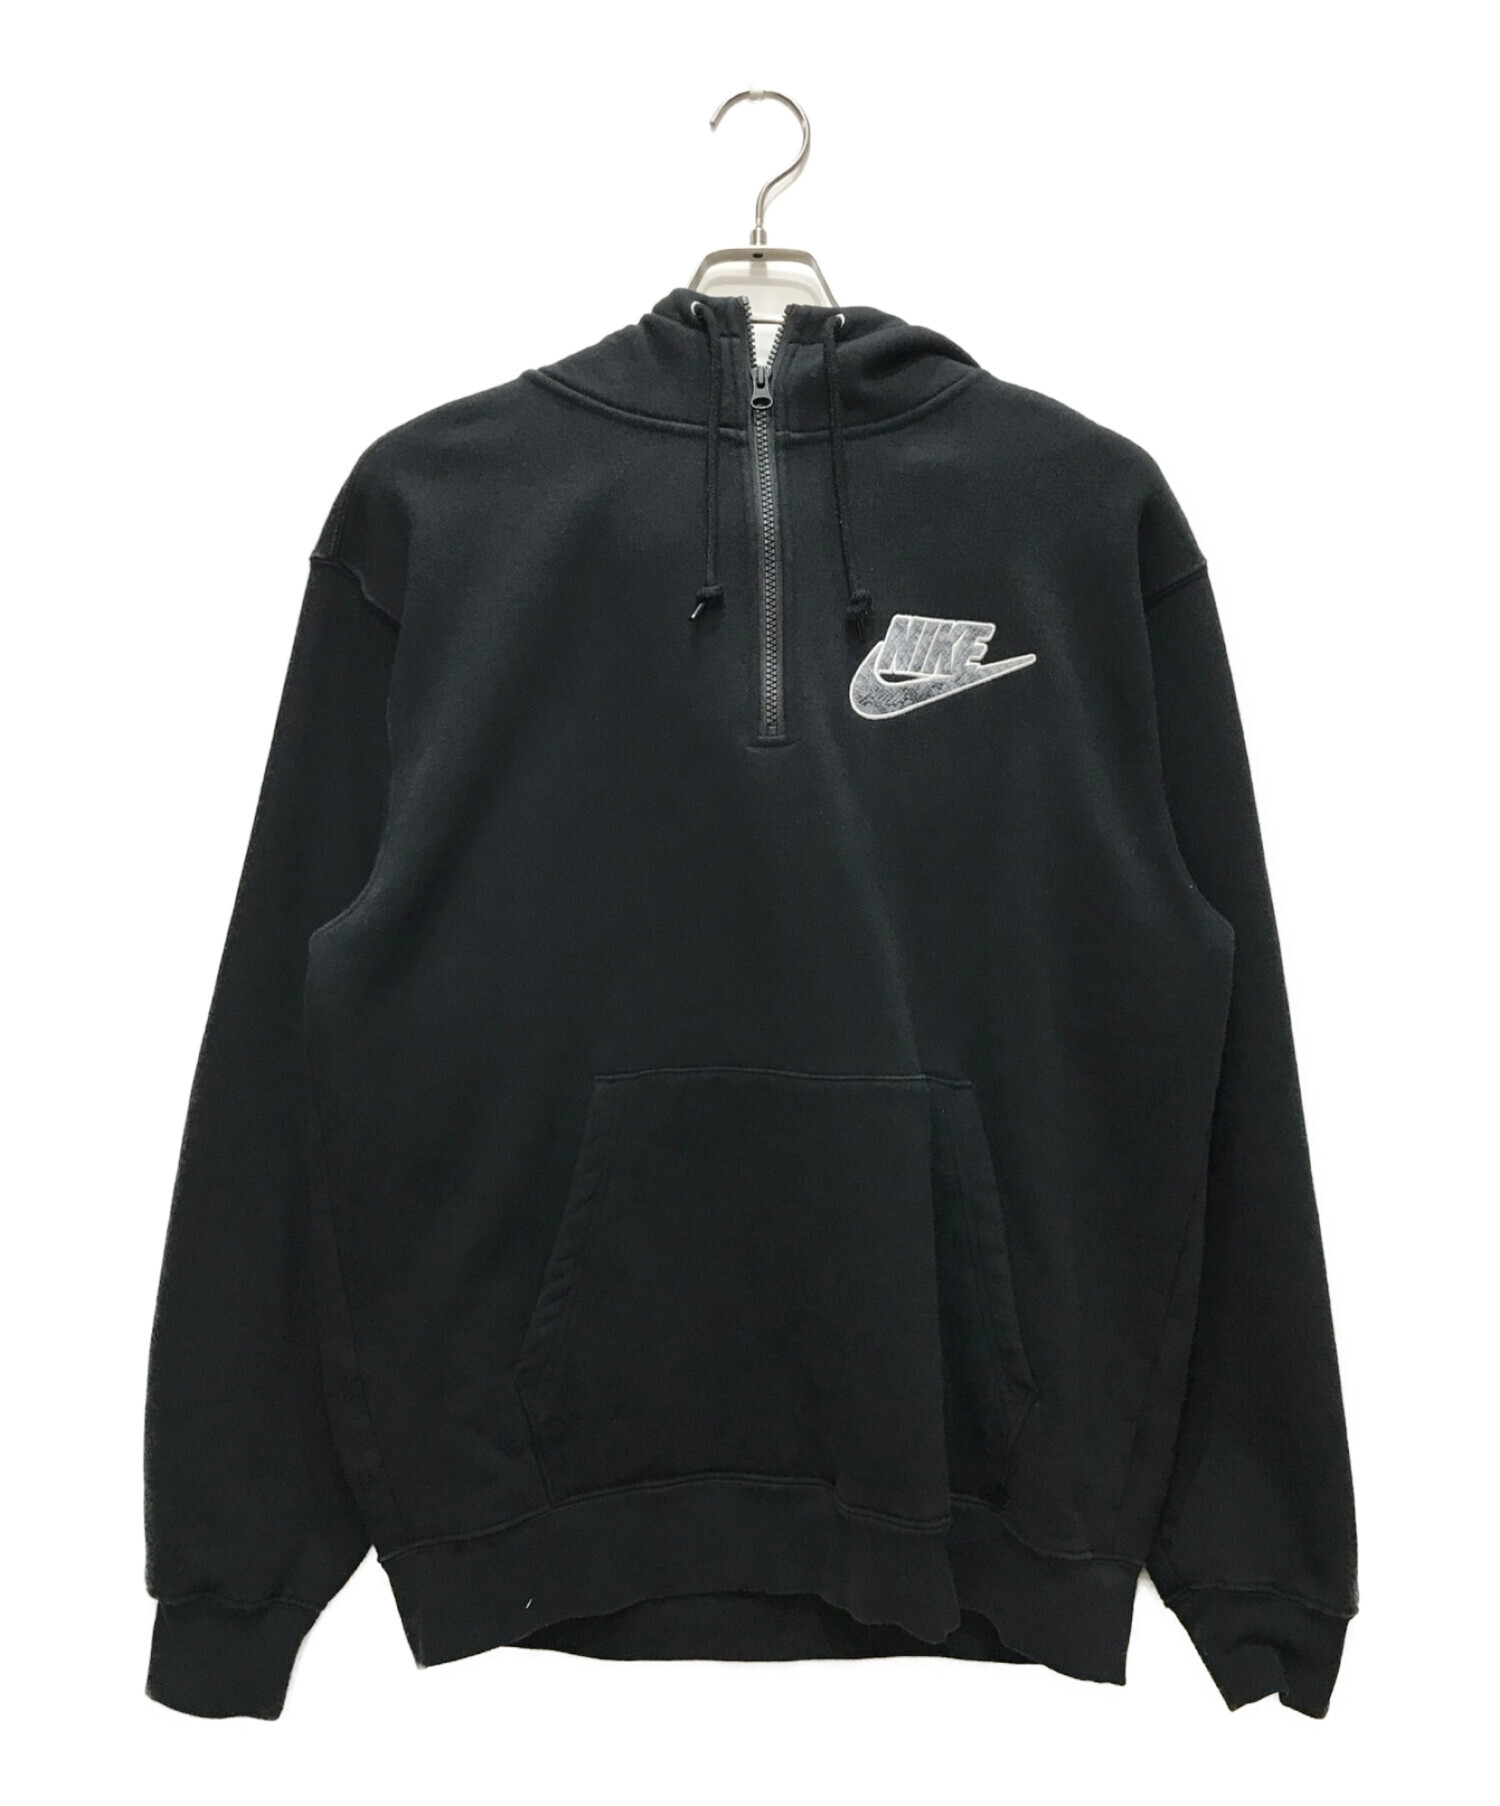 Supreme®/Nike®Half Zip Hooded Sweatshirt